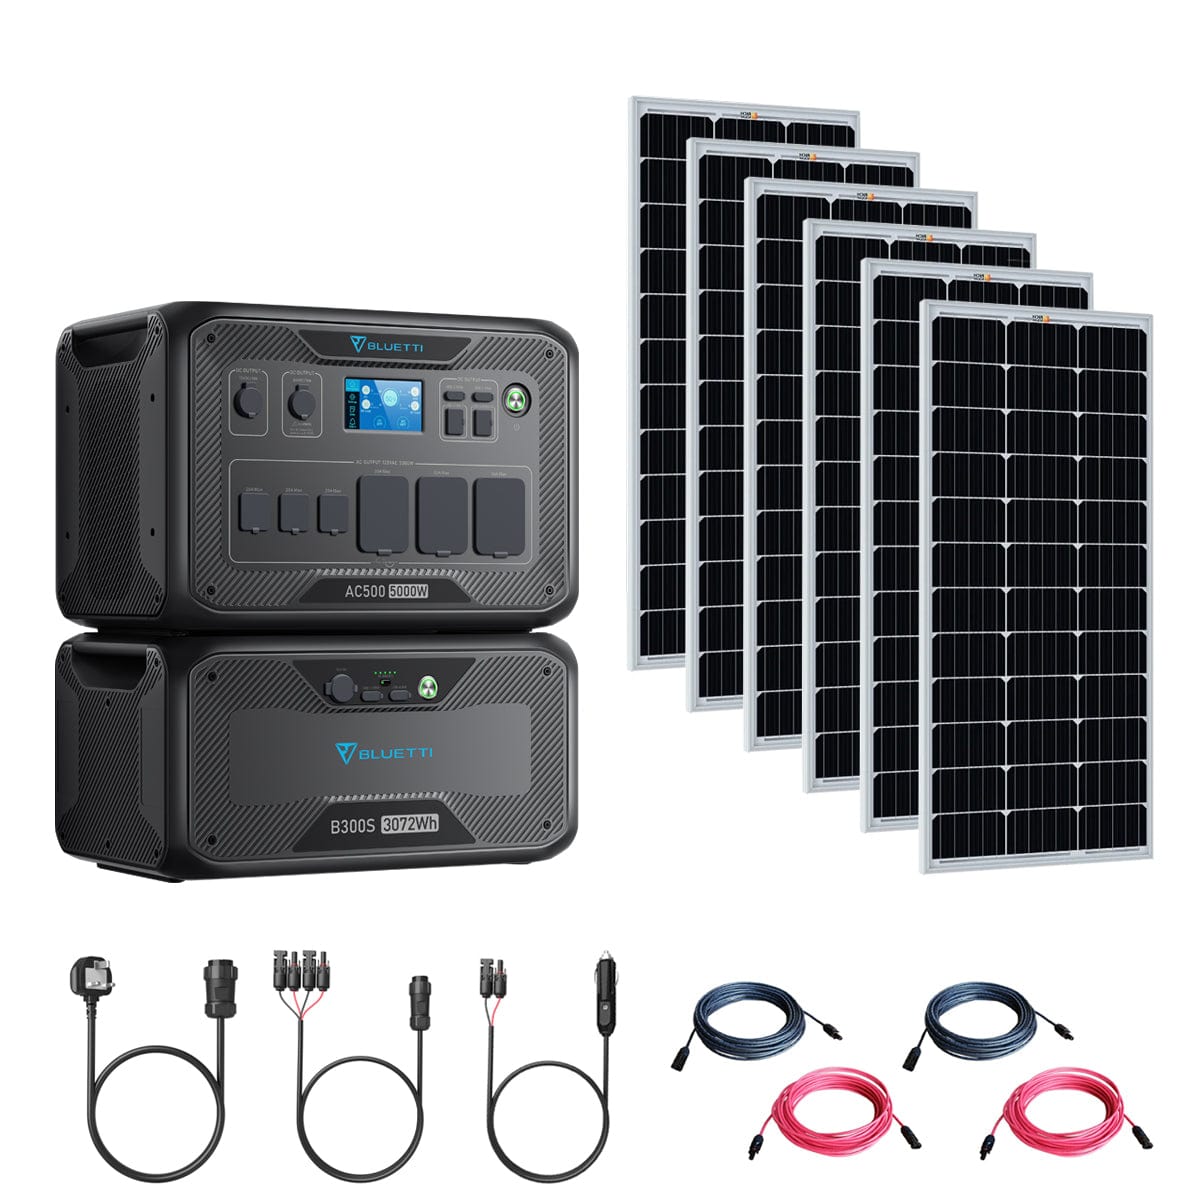 Bluetti AC500 5000W/3,072Wh Solar Generator Kit | 6 x 200W 12V Rigid Mono Solar Panels | 1 x B300S 3072Wh Battery | Complete Solar Kit Bluetti AC500 Kits AC500+B300S